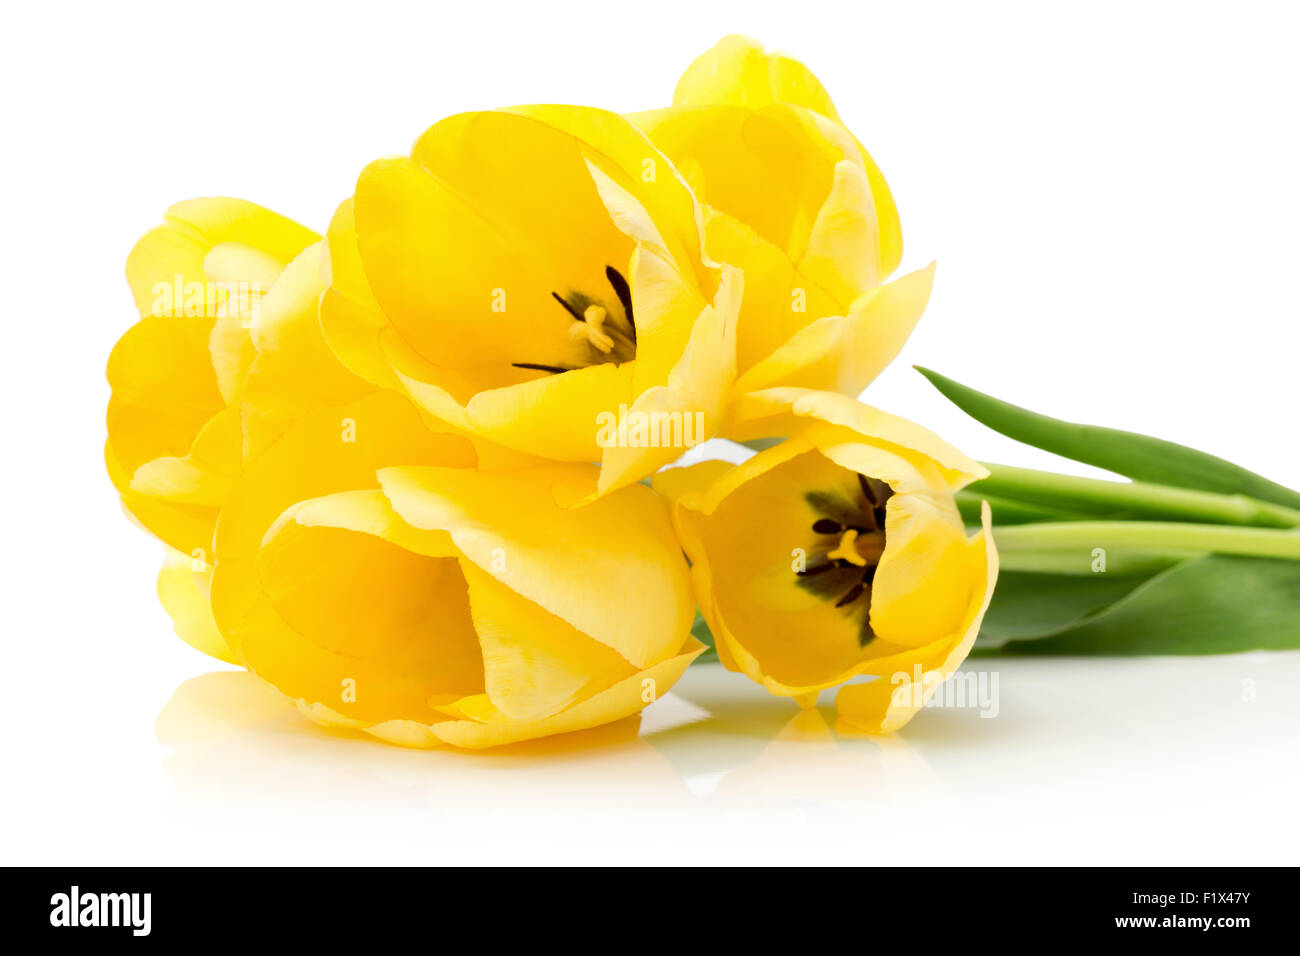 gelbe Tulpen isoliert auf einem weißen Hintergrund. Stockfoto